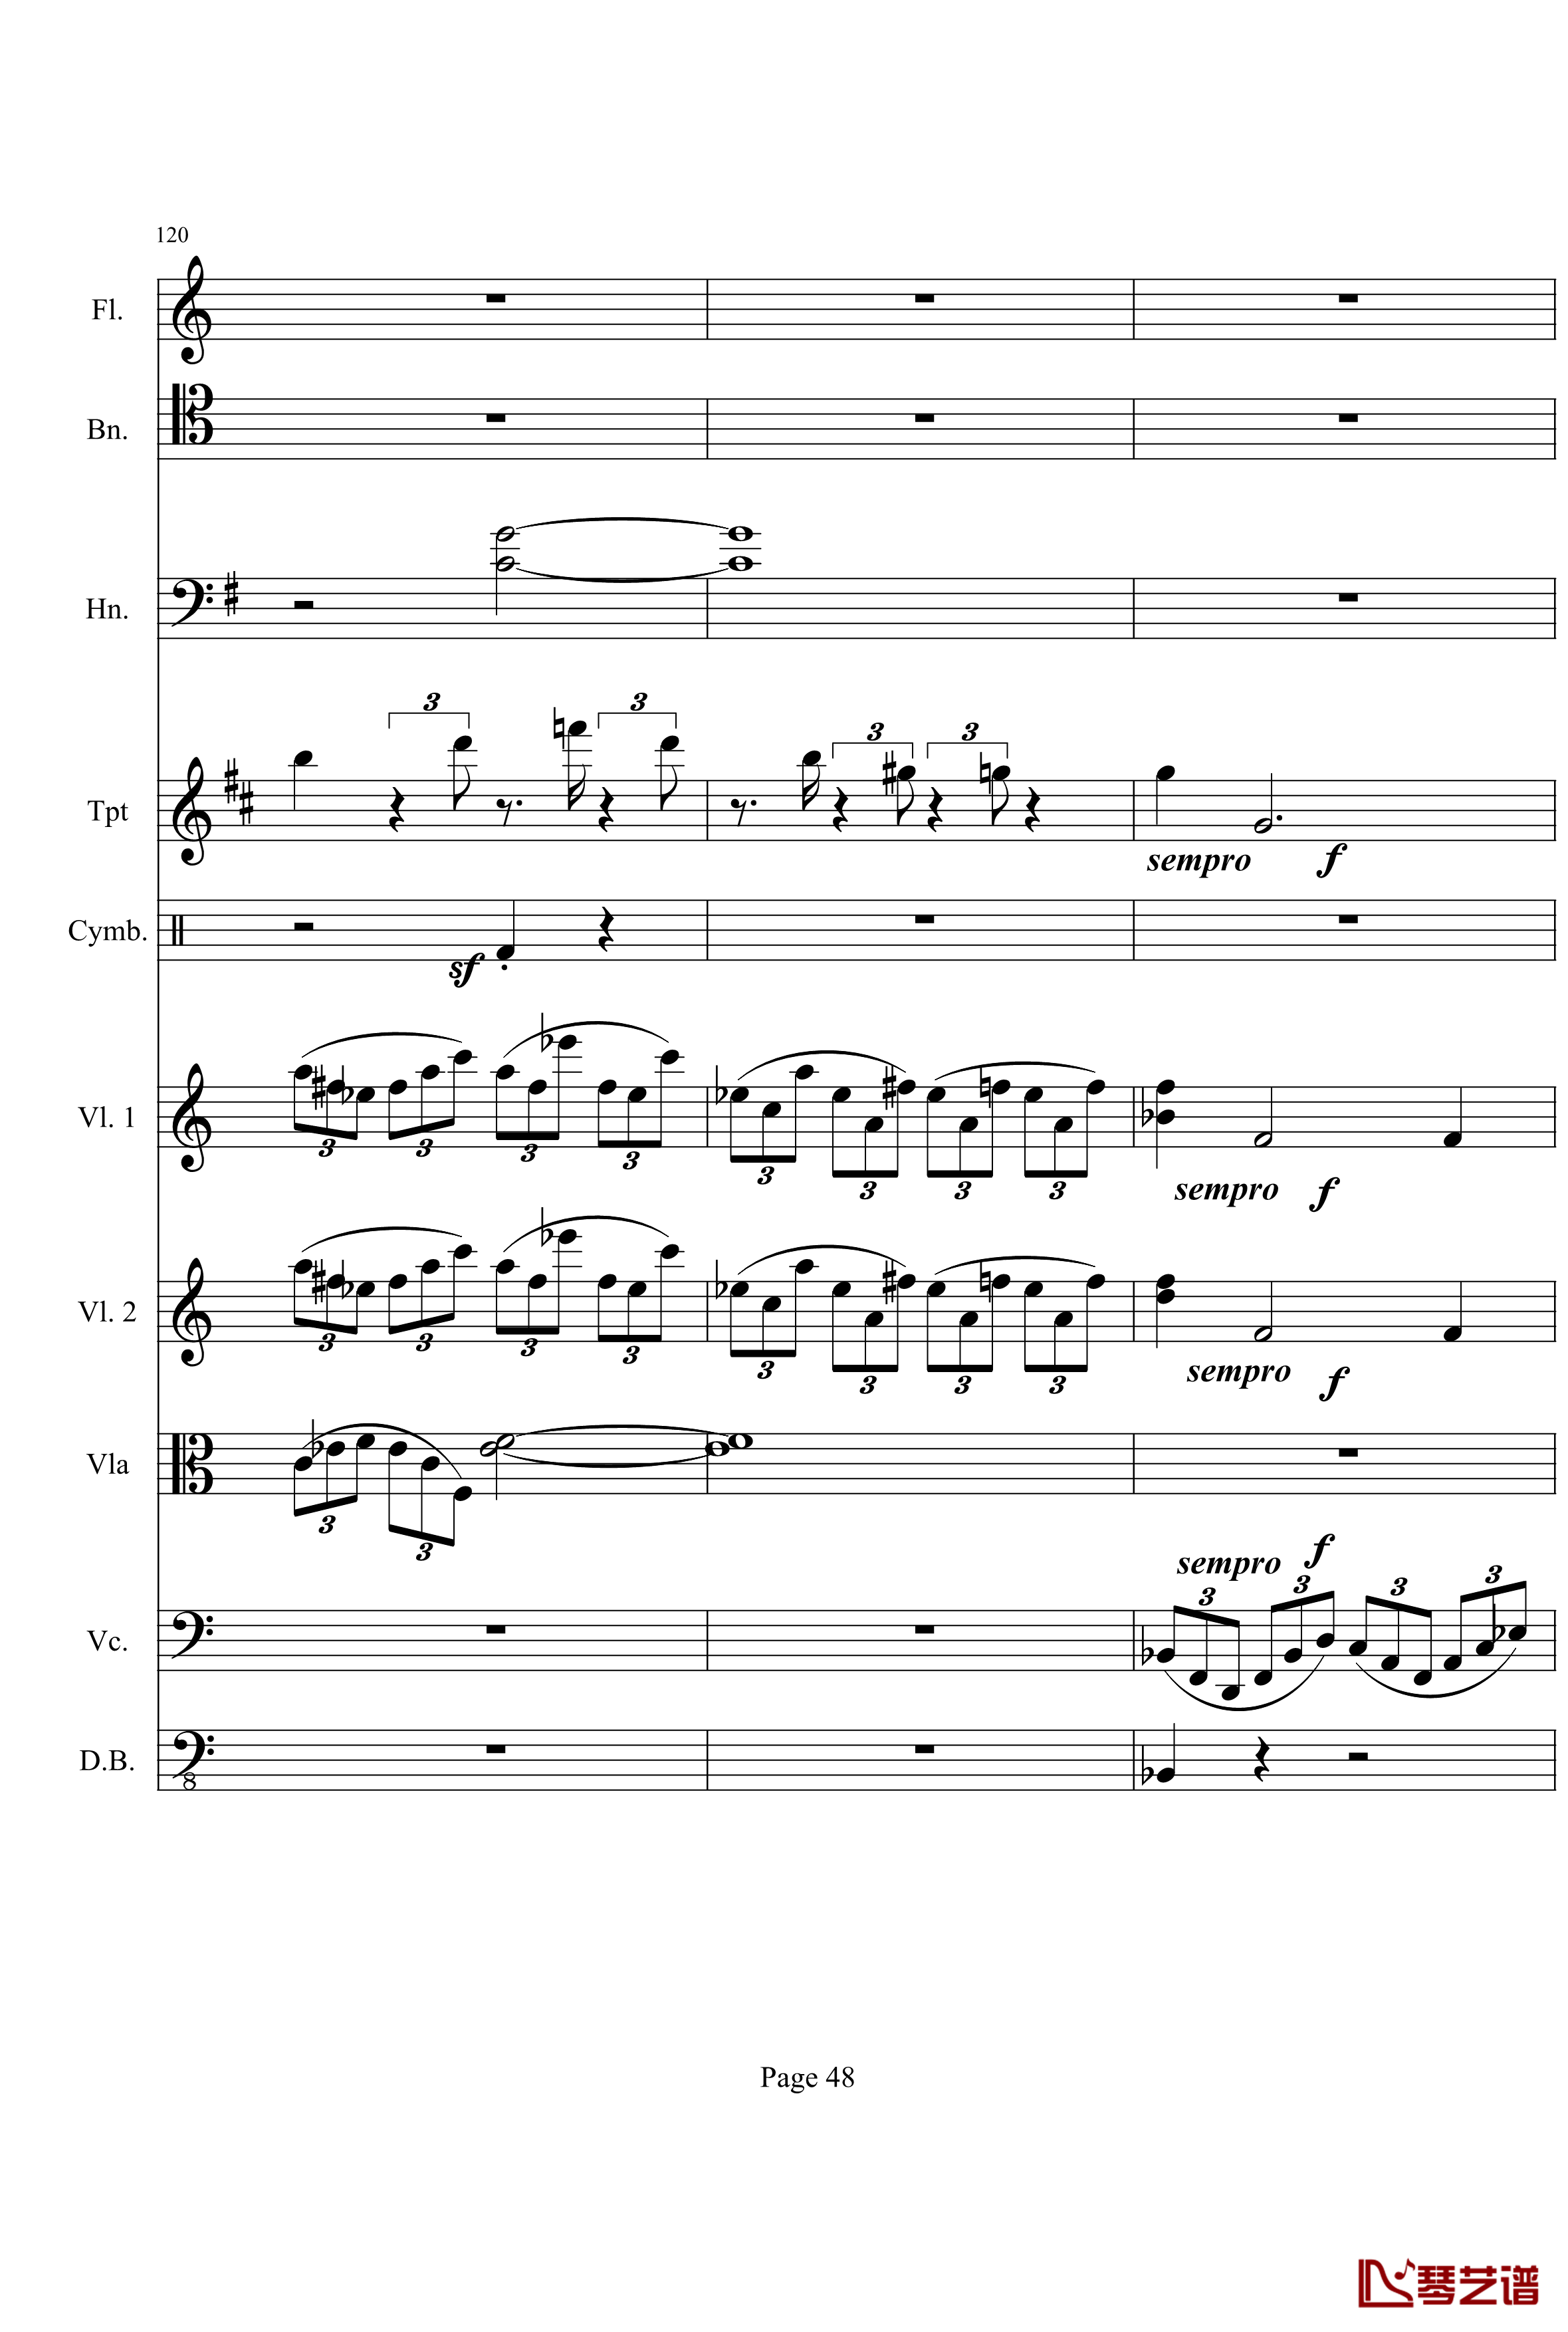 奏鸣曲之交响钢琴谱-第21首-Ⅰ-贝多芬-beethoven48